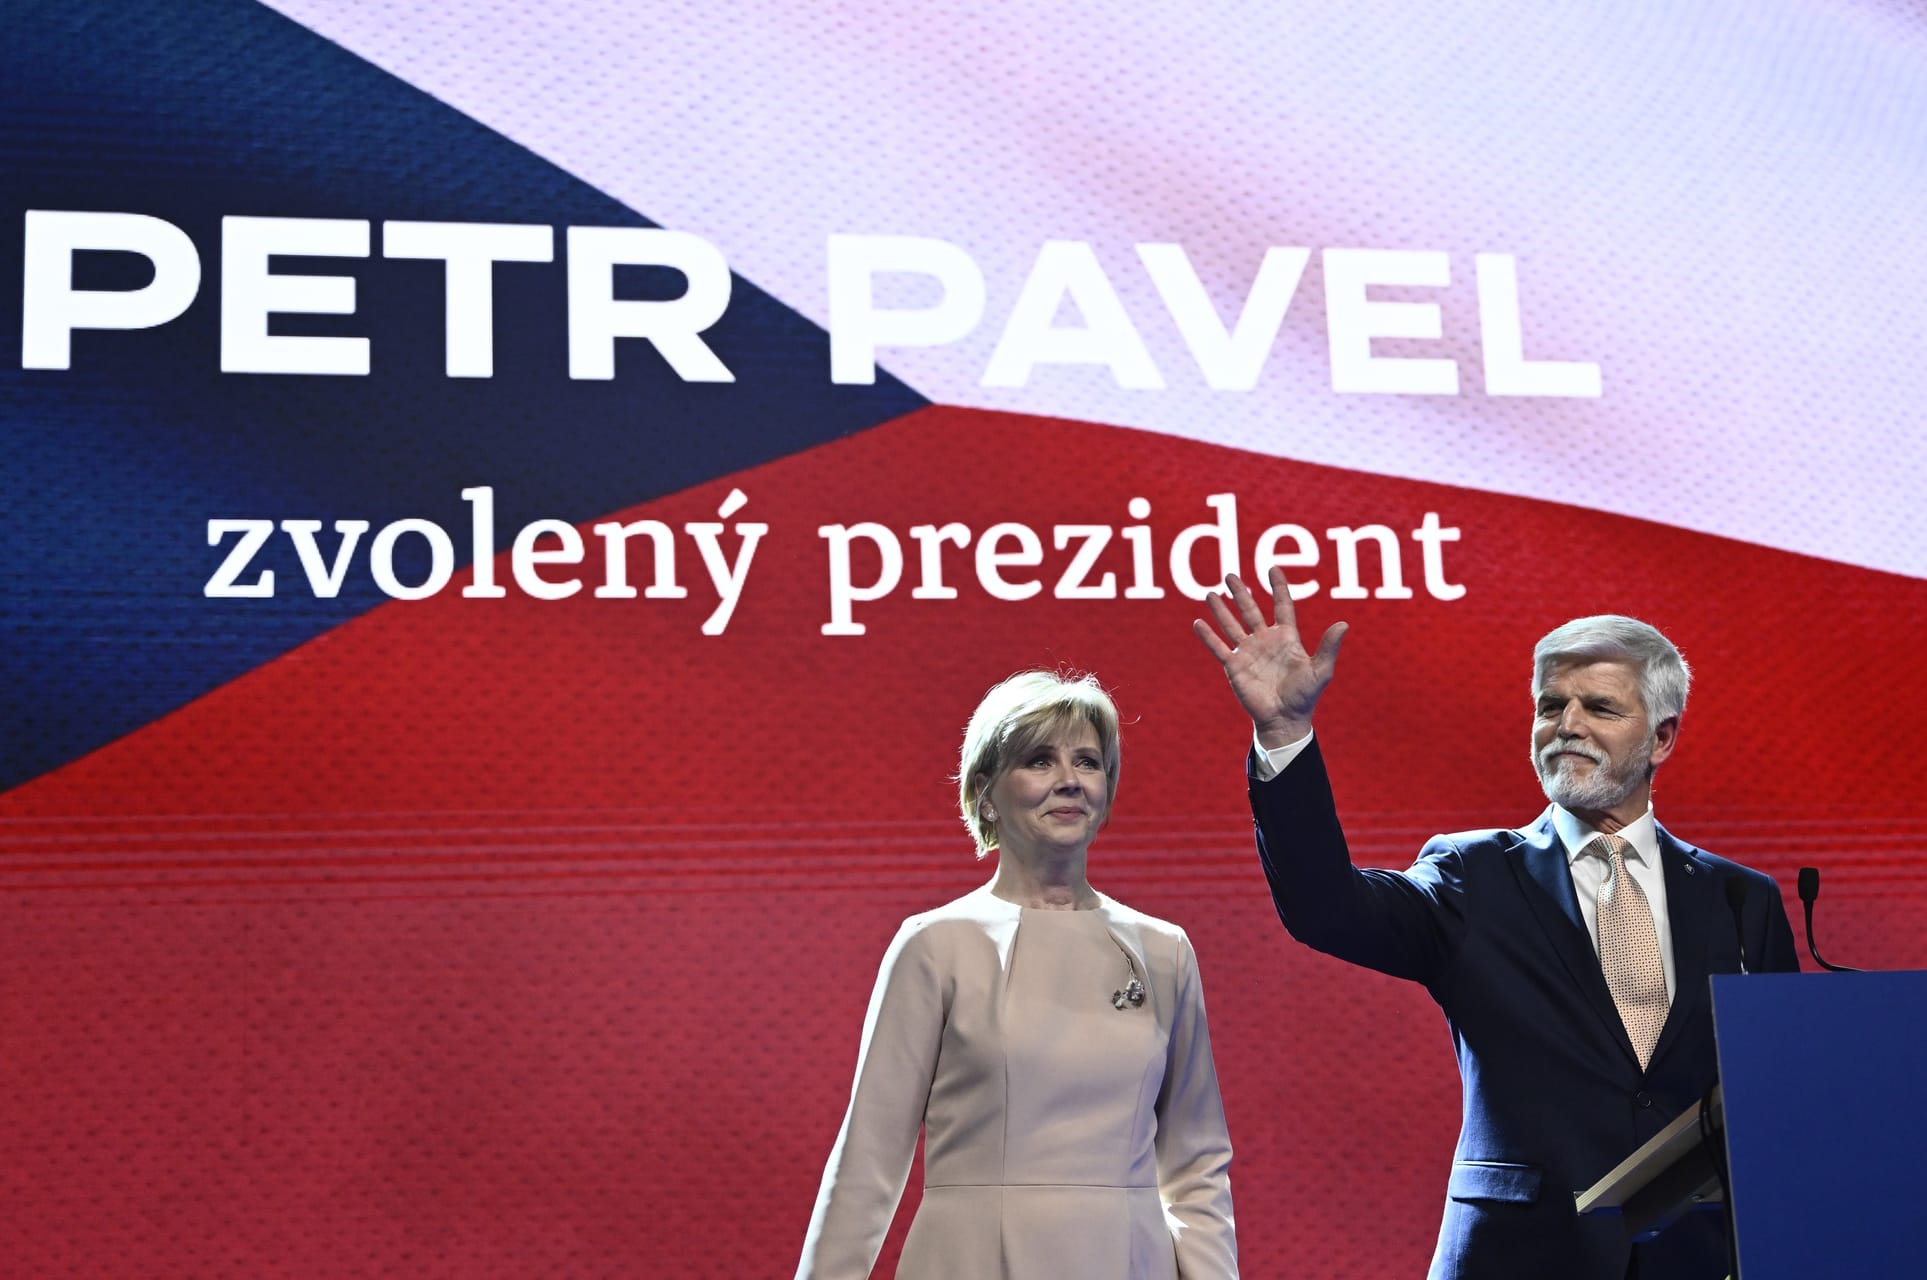 Биография президента Чехии Петра Павела: рассказываем о жизни и карьере